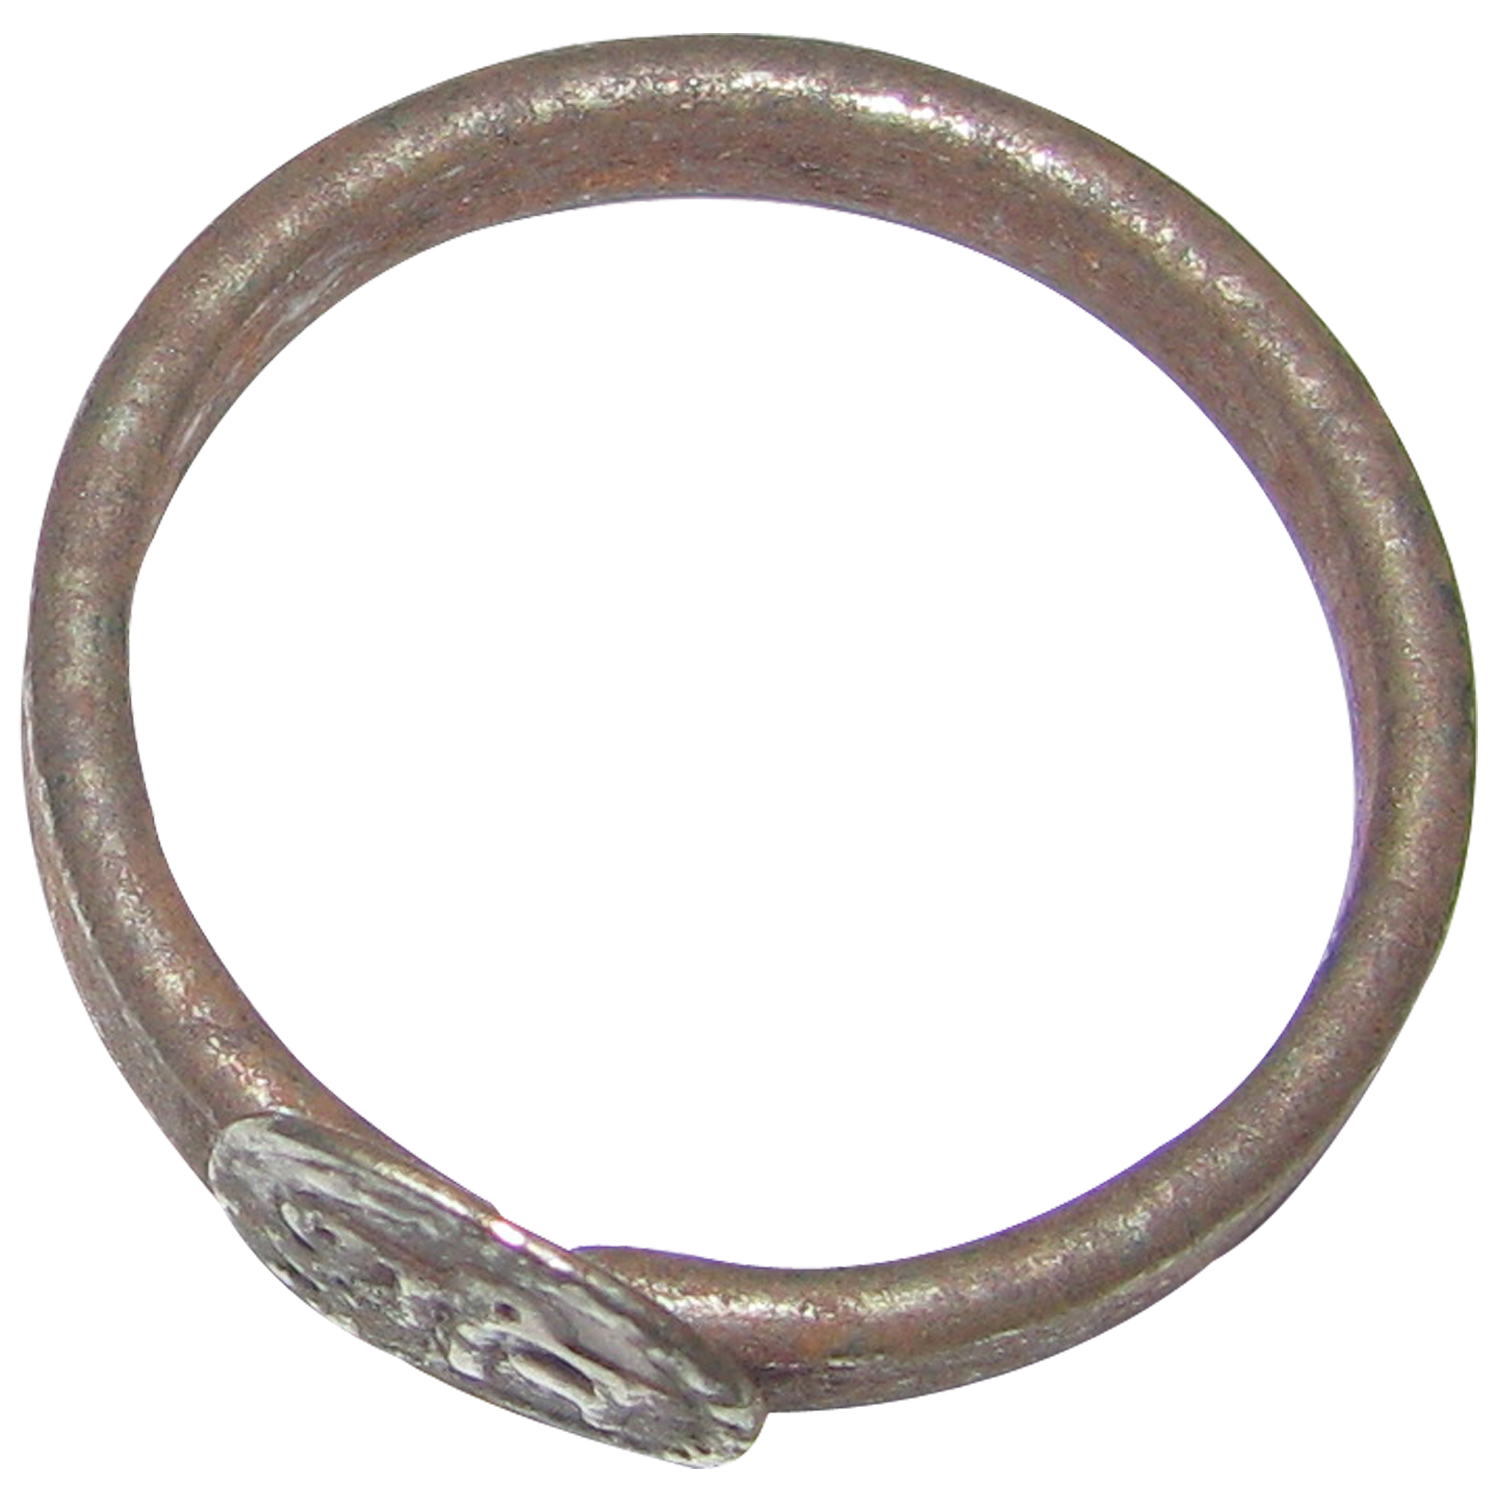 Shani Dosha Niwaran Black Horse Shoe Iron Ring Price- 200/- rs